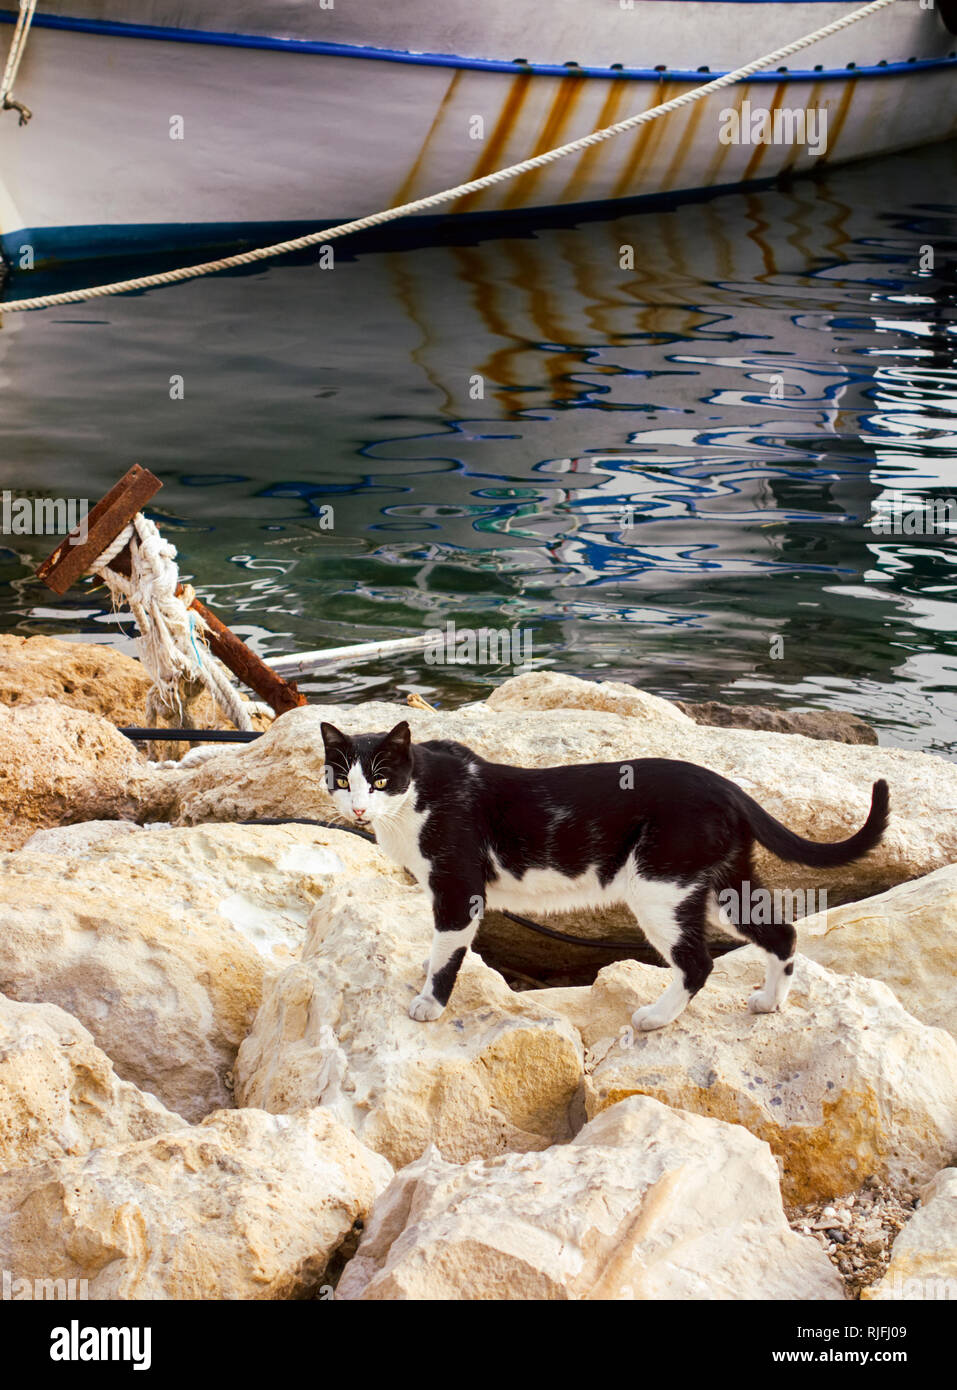 Schwarze und weiße Katze auf den Steinen in der Nähe von Meer und Schiff im Dock. Stockfoto